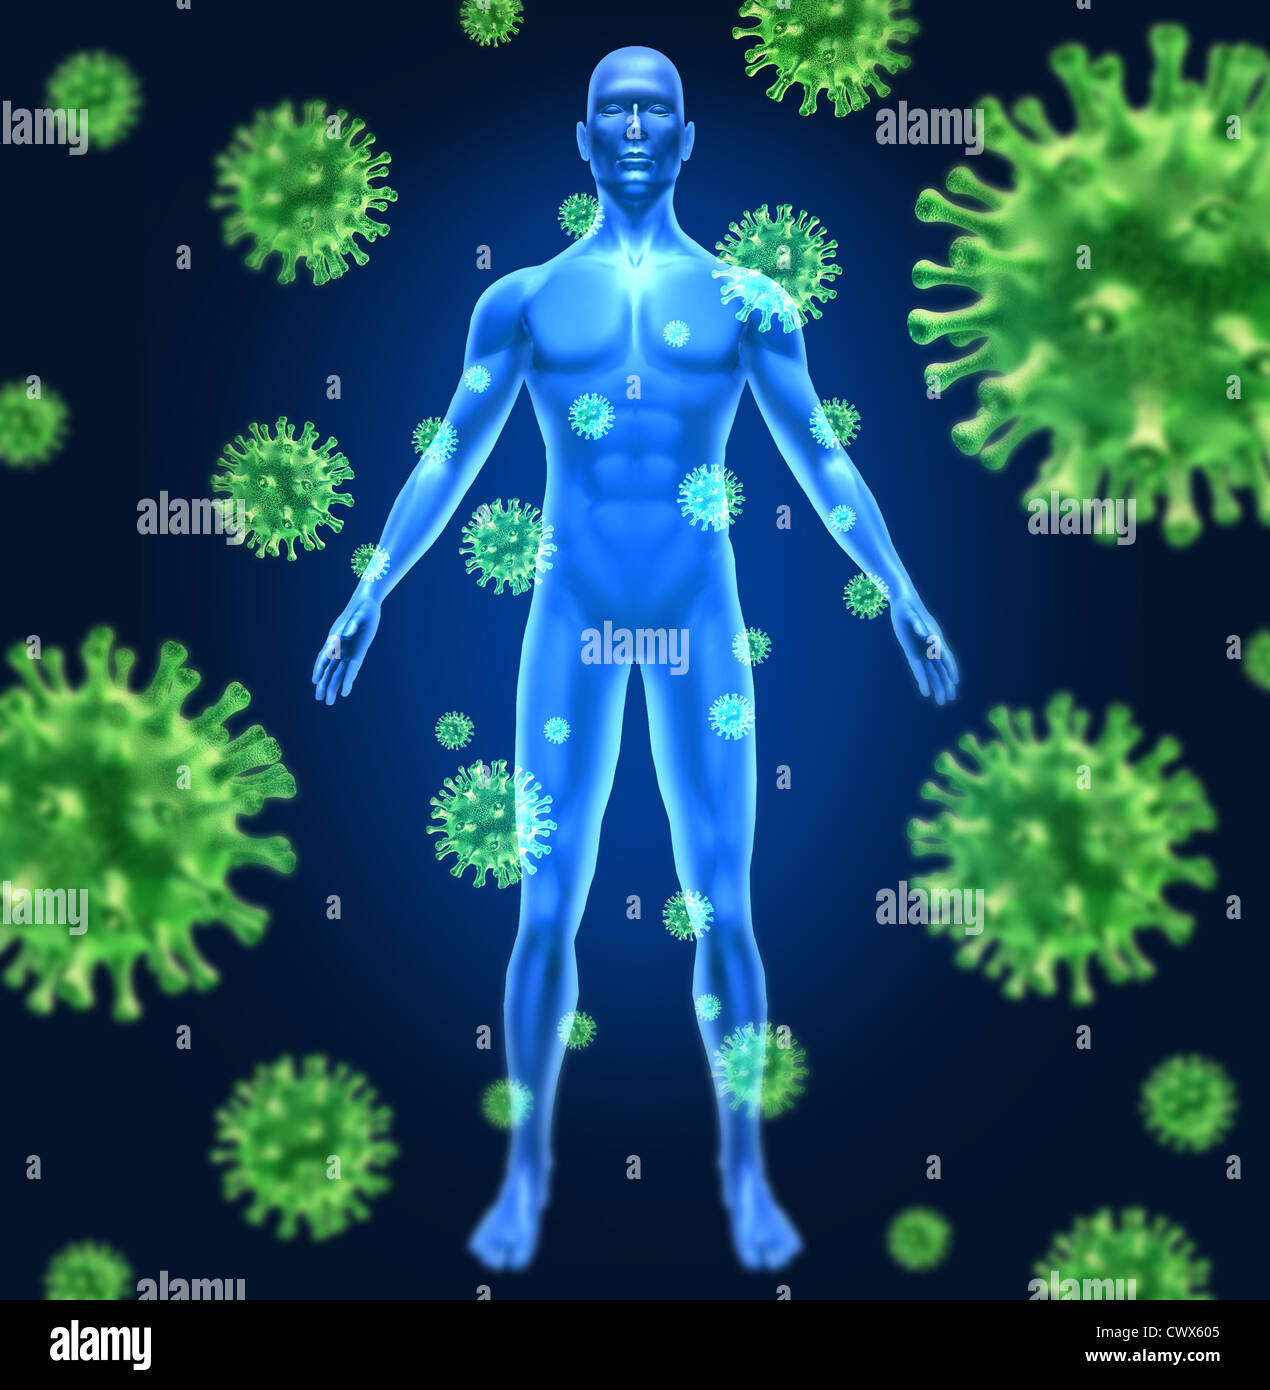 Menschliches Virus Infektion medizinischen Symbol vertreten durch eine Gruppe von grünen bakterielle Eindringling Zellen verursacht Krankheit und Krankheit zu gesunden Patienten mit einen Mann stehen, die von der Krankheit infiziert. Stockfoto